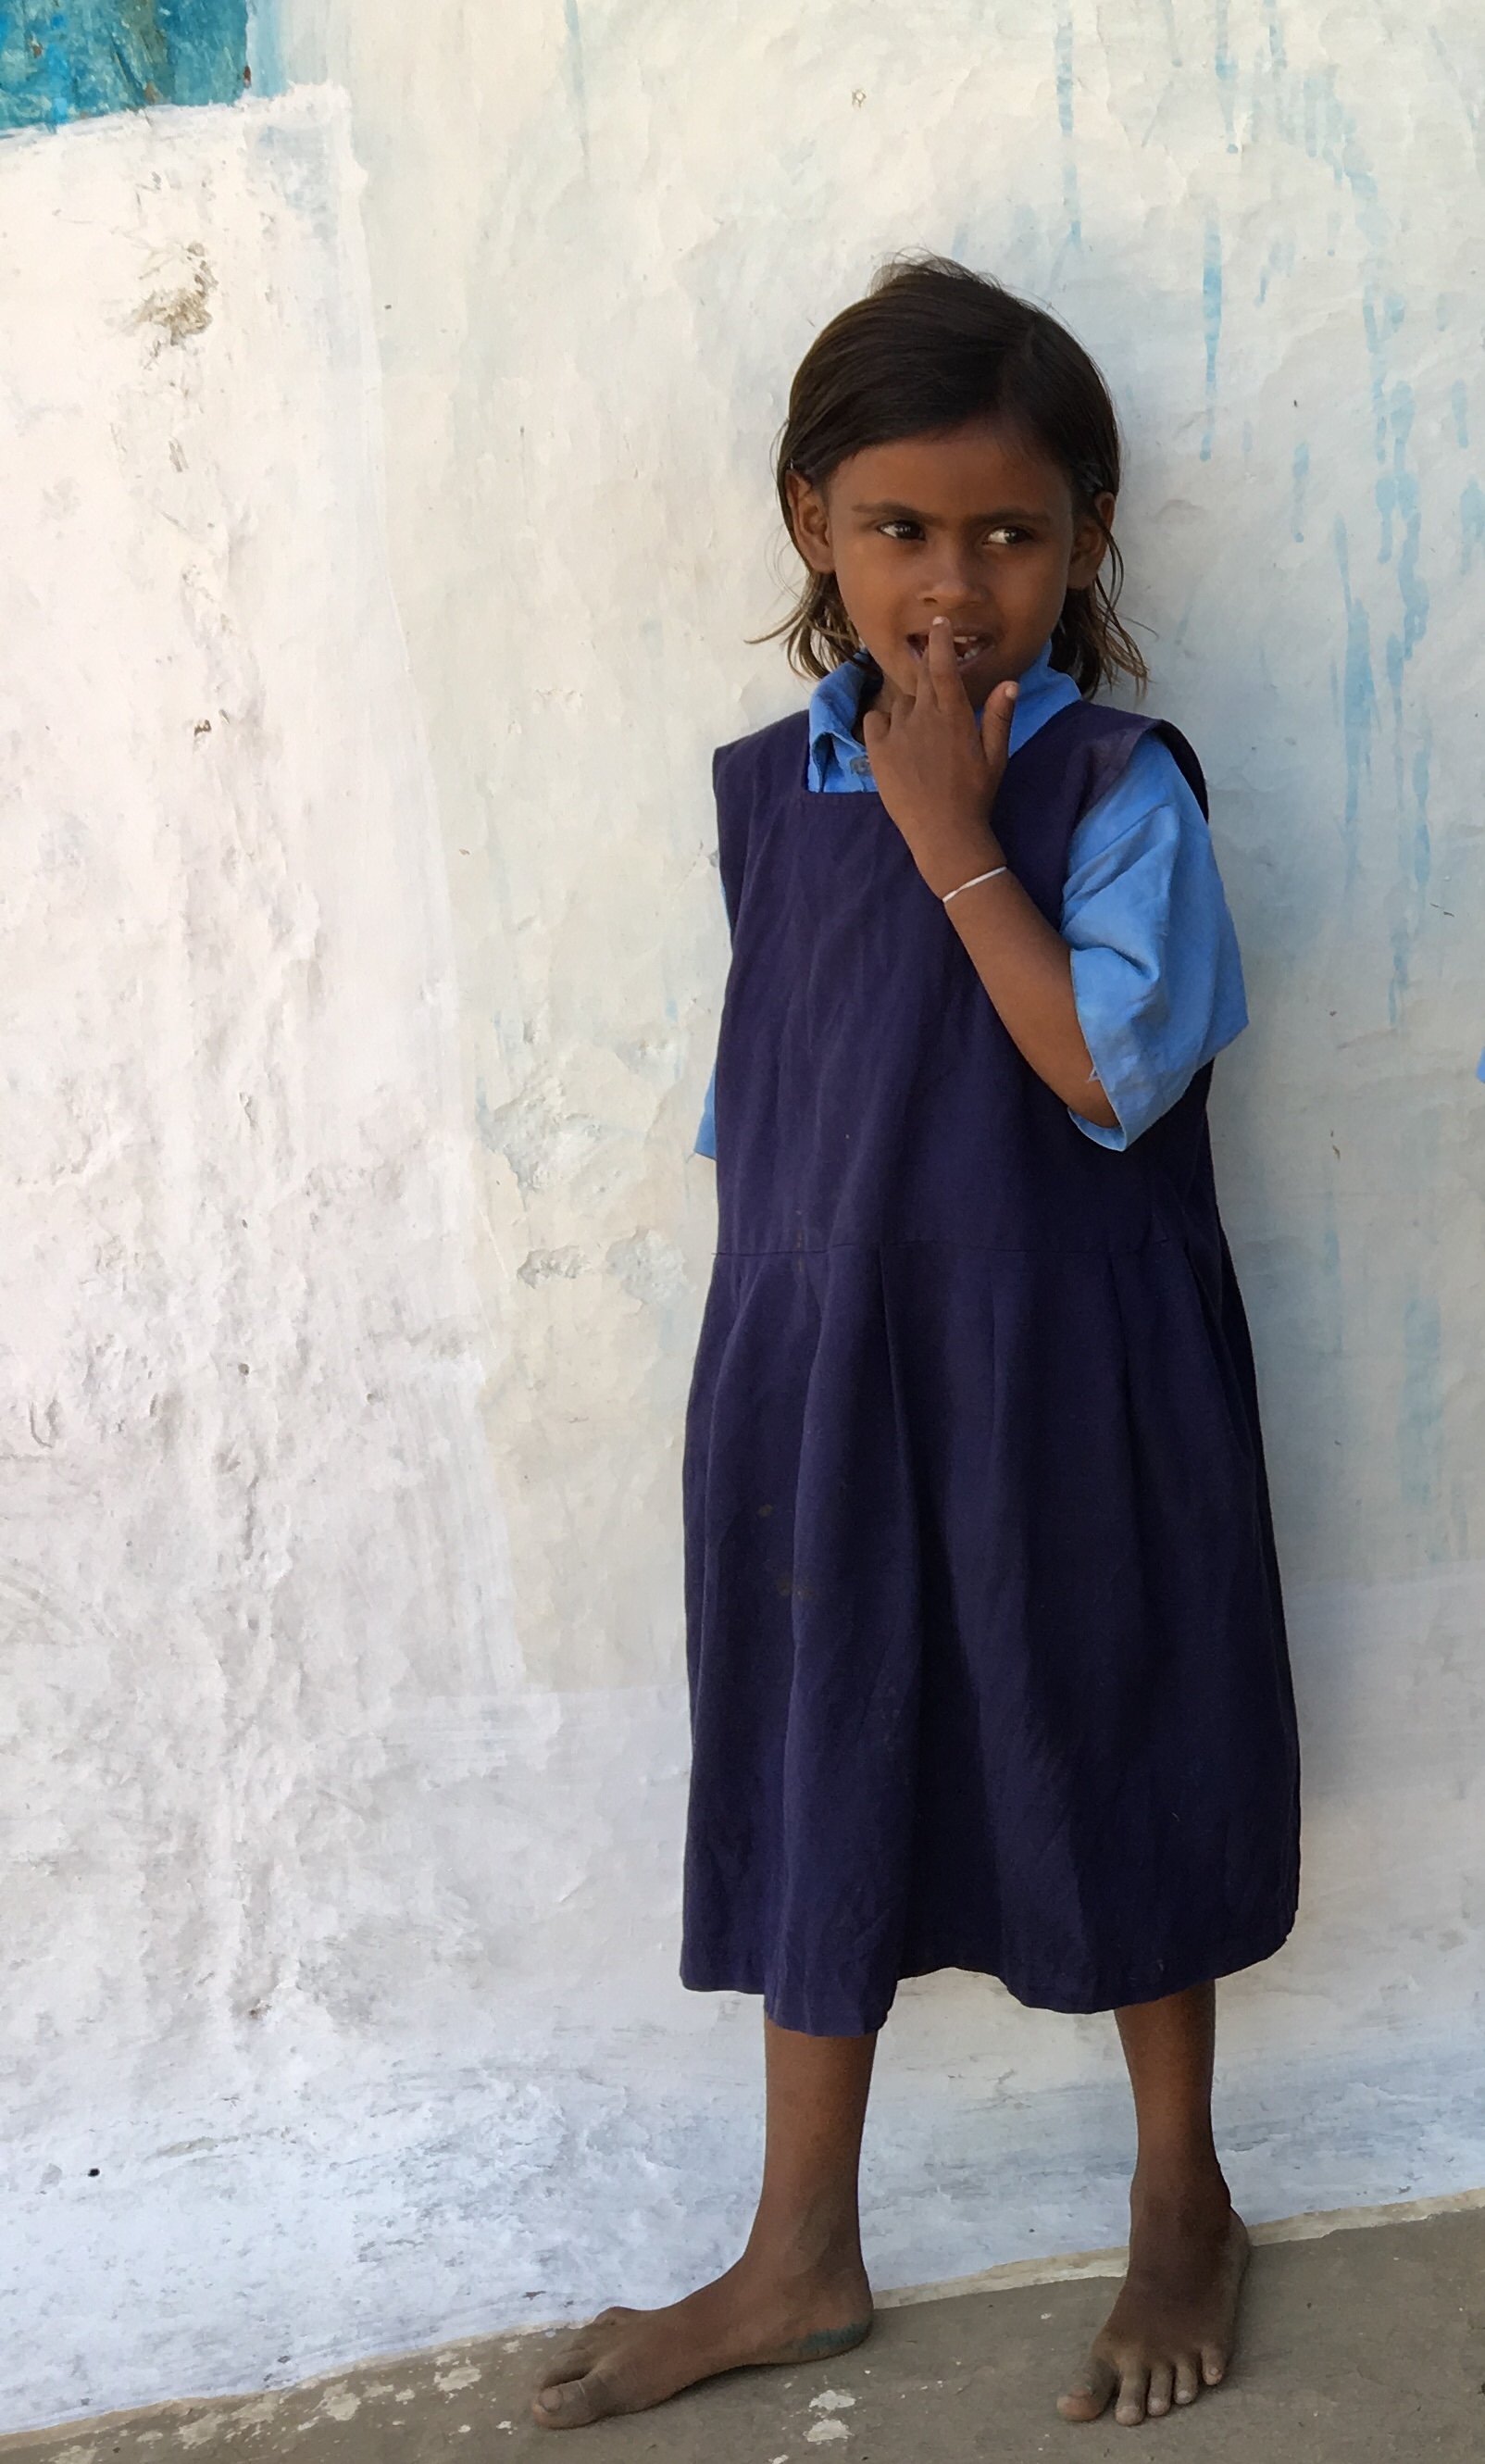 Little girl blue dress white wall Bhorameo.jpg